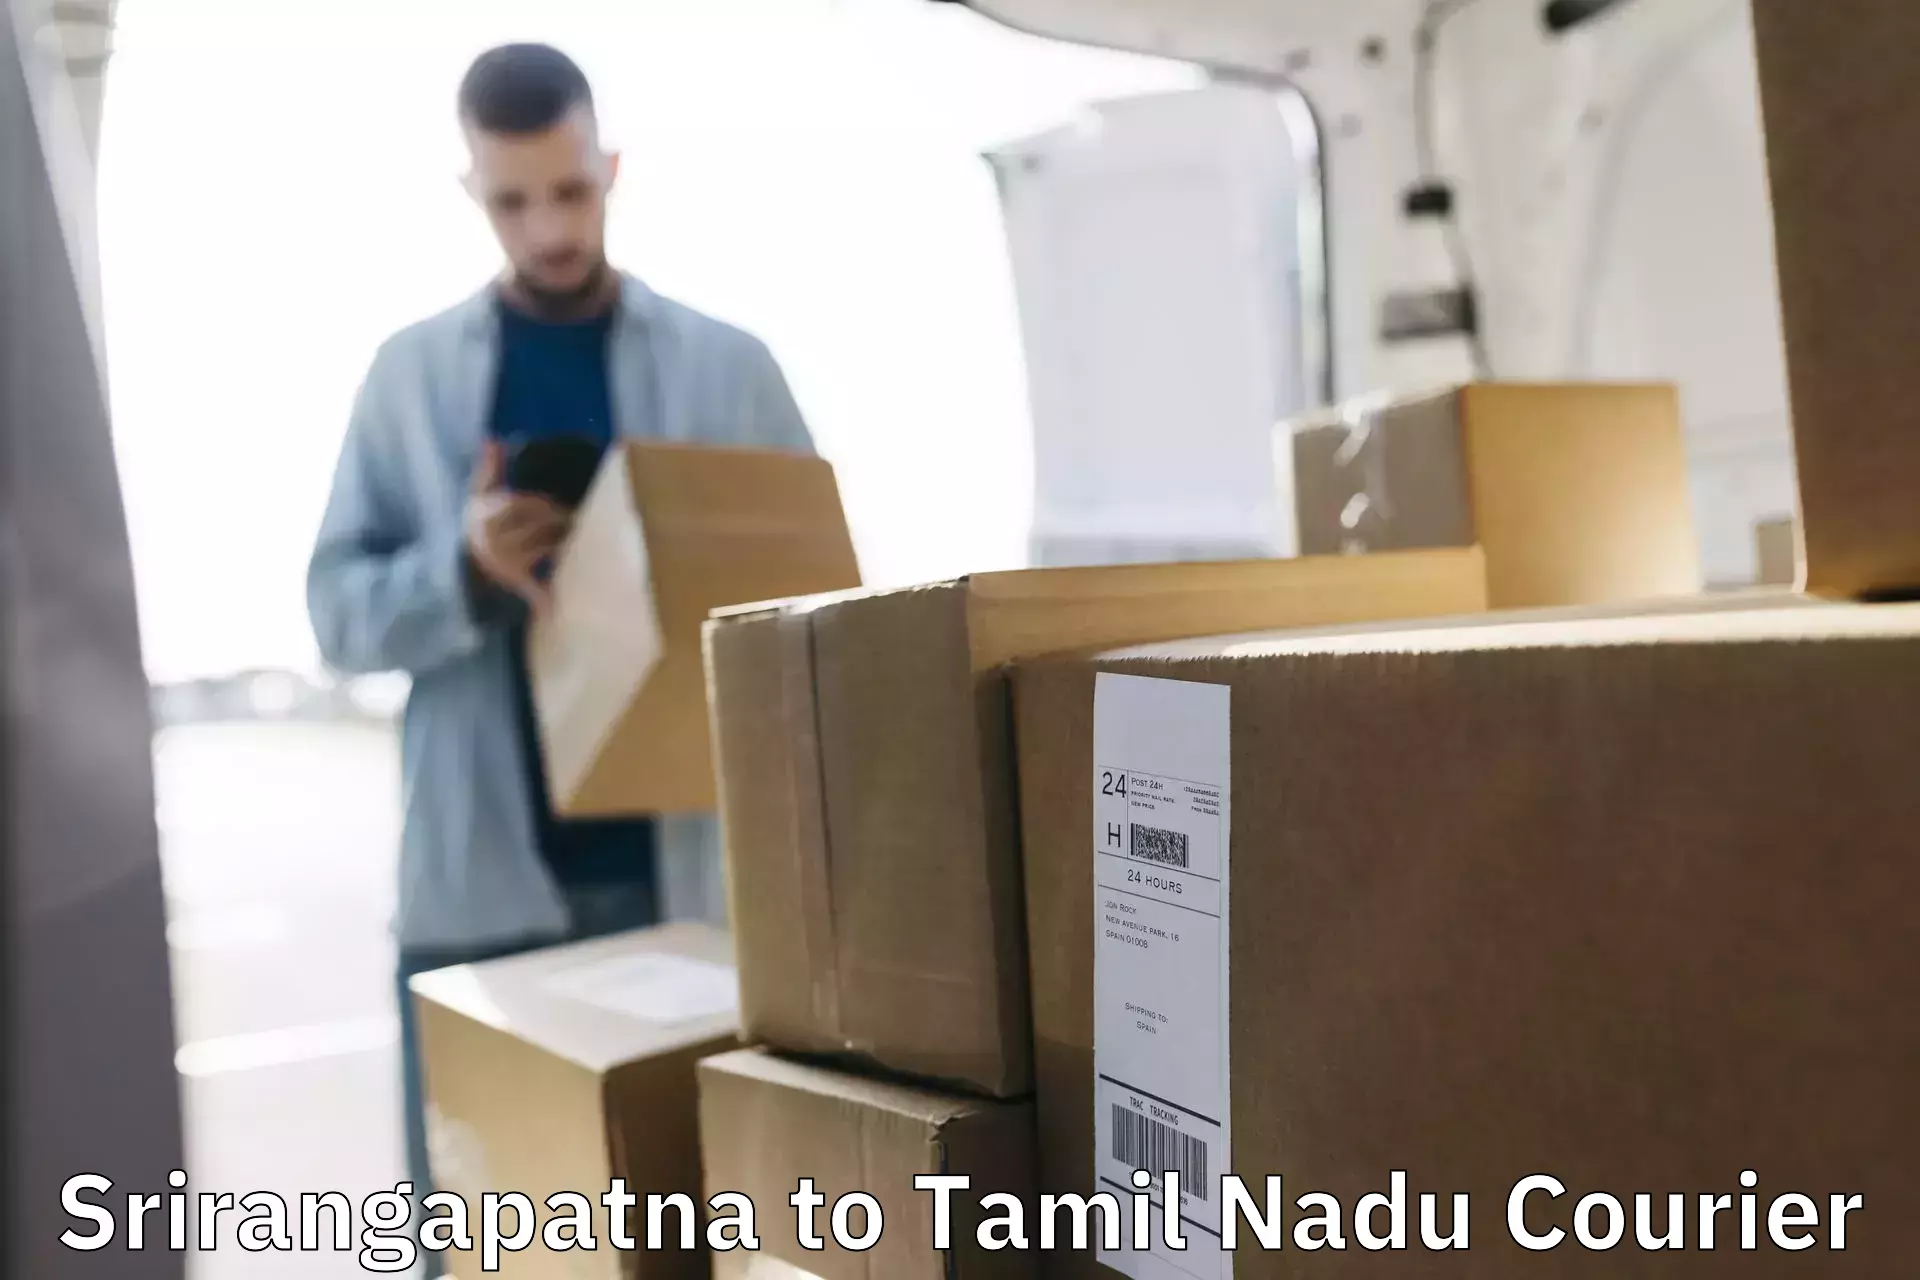 State-of-the-art courier technology Srirangapatna to Chennai Port